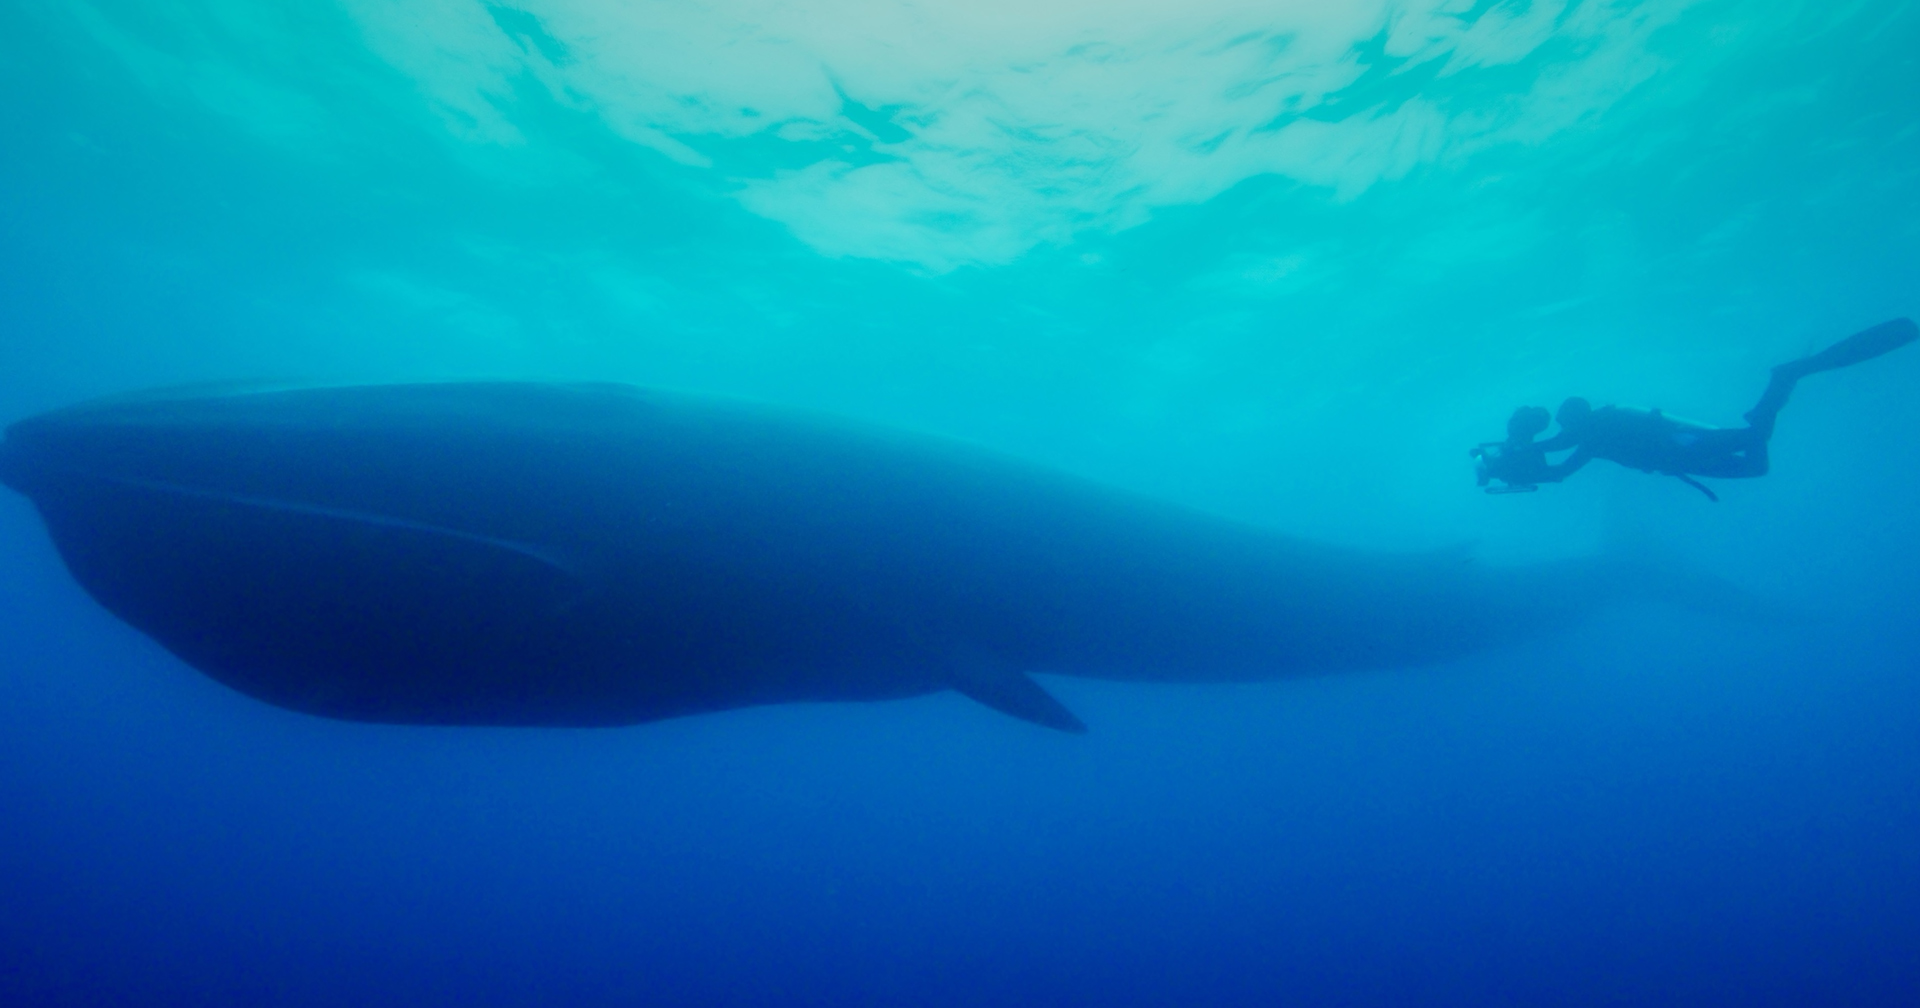 ซีรีส์ ‘Epic Adventures with Bertie Gregory’ เผยภาพปลาวาฬฟินรวมกลุ่มกันมากสุด เท่าที่มนุษย์เคยบันทึกไว้